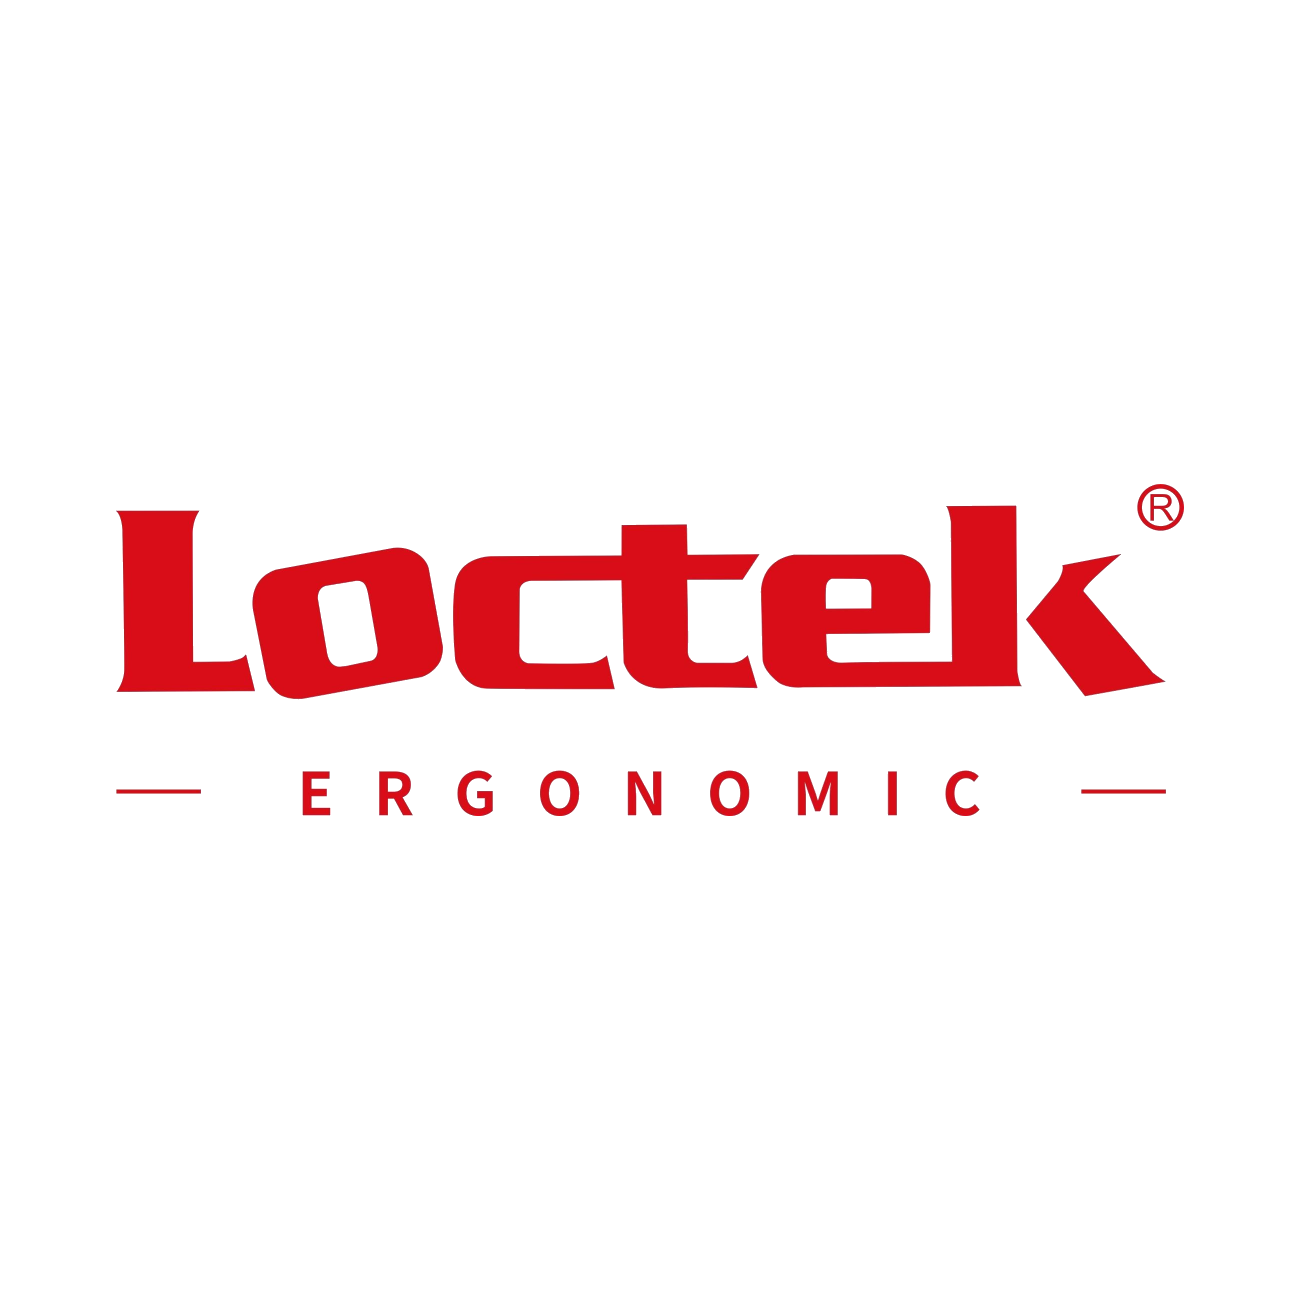 Loctek 680X480MM Mt202a Black Ergonomic Deskalator Laptop Stand Desk Riser Workstation Load Capacity 12KG Height Adjustable 40-400MM Stroke 360MM / 5 Years Warranty